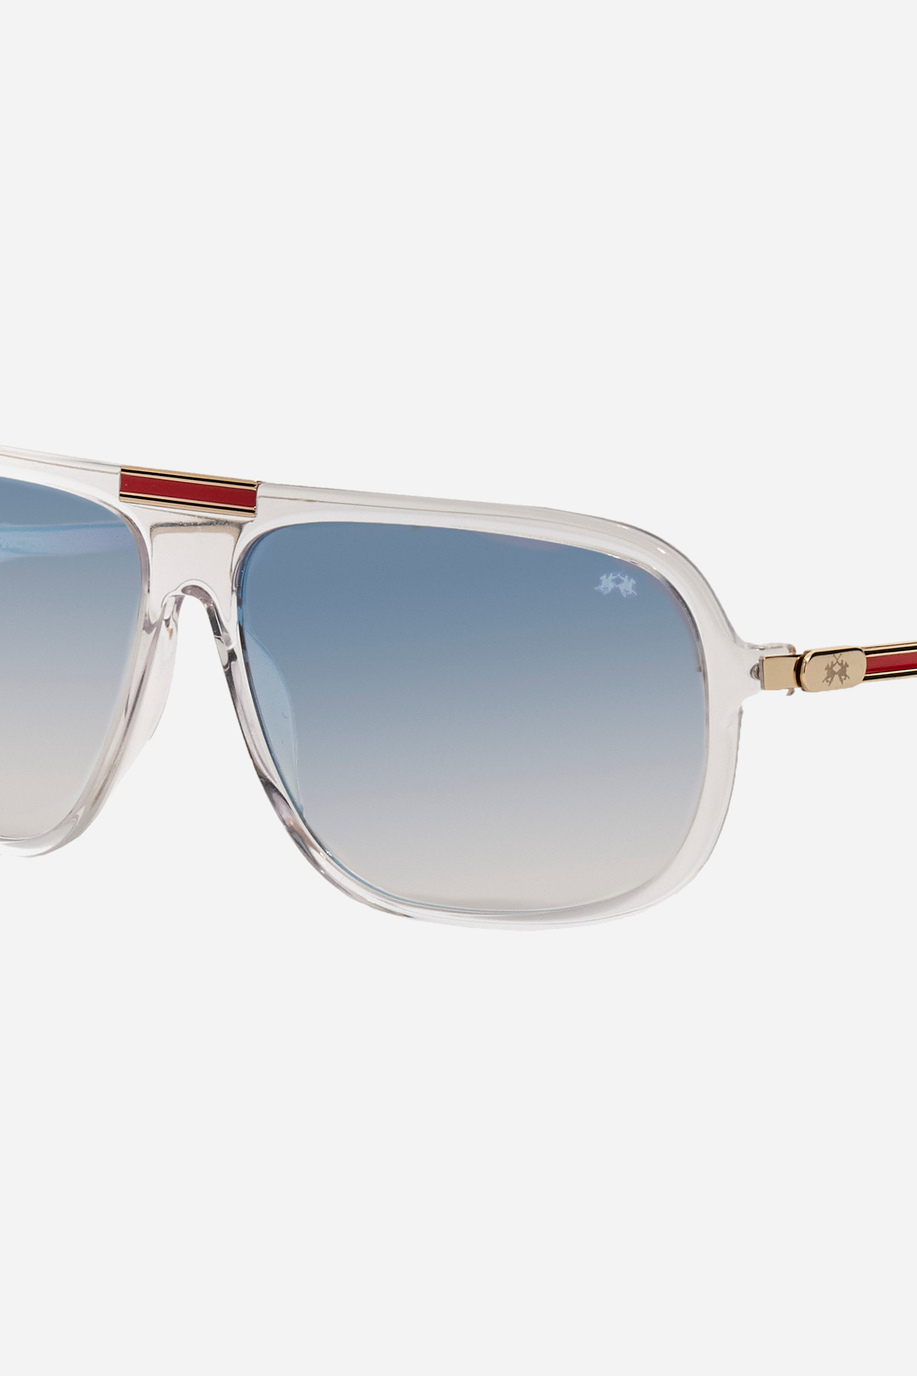 Metal sunglasses - Accessories | La Martina - Official Online Shop